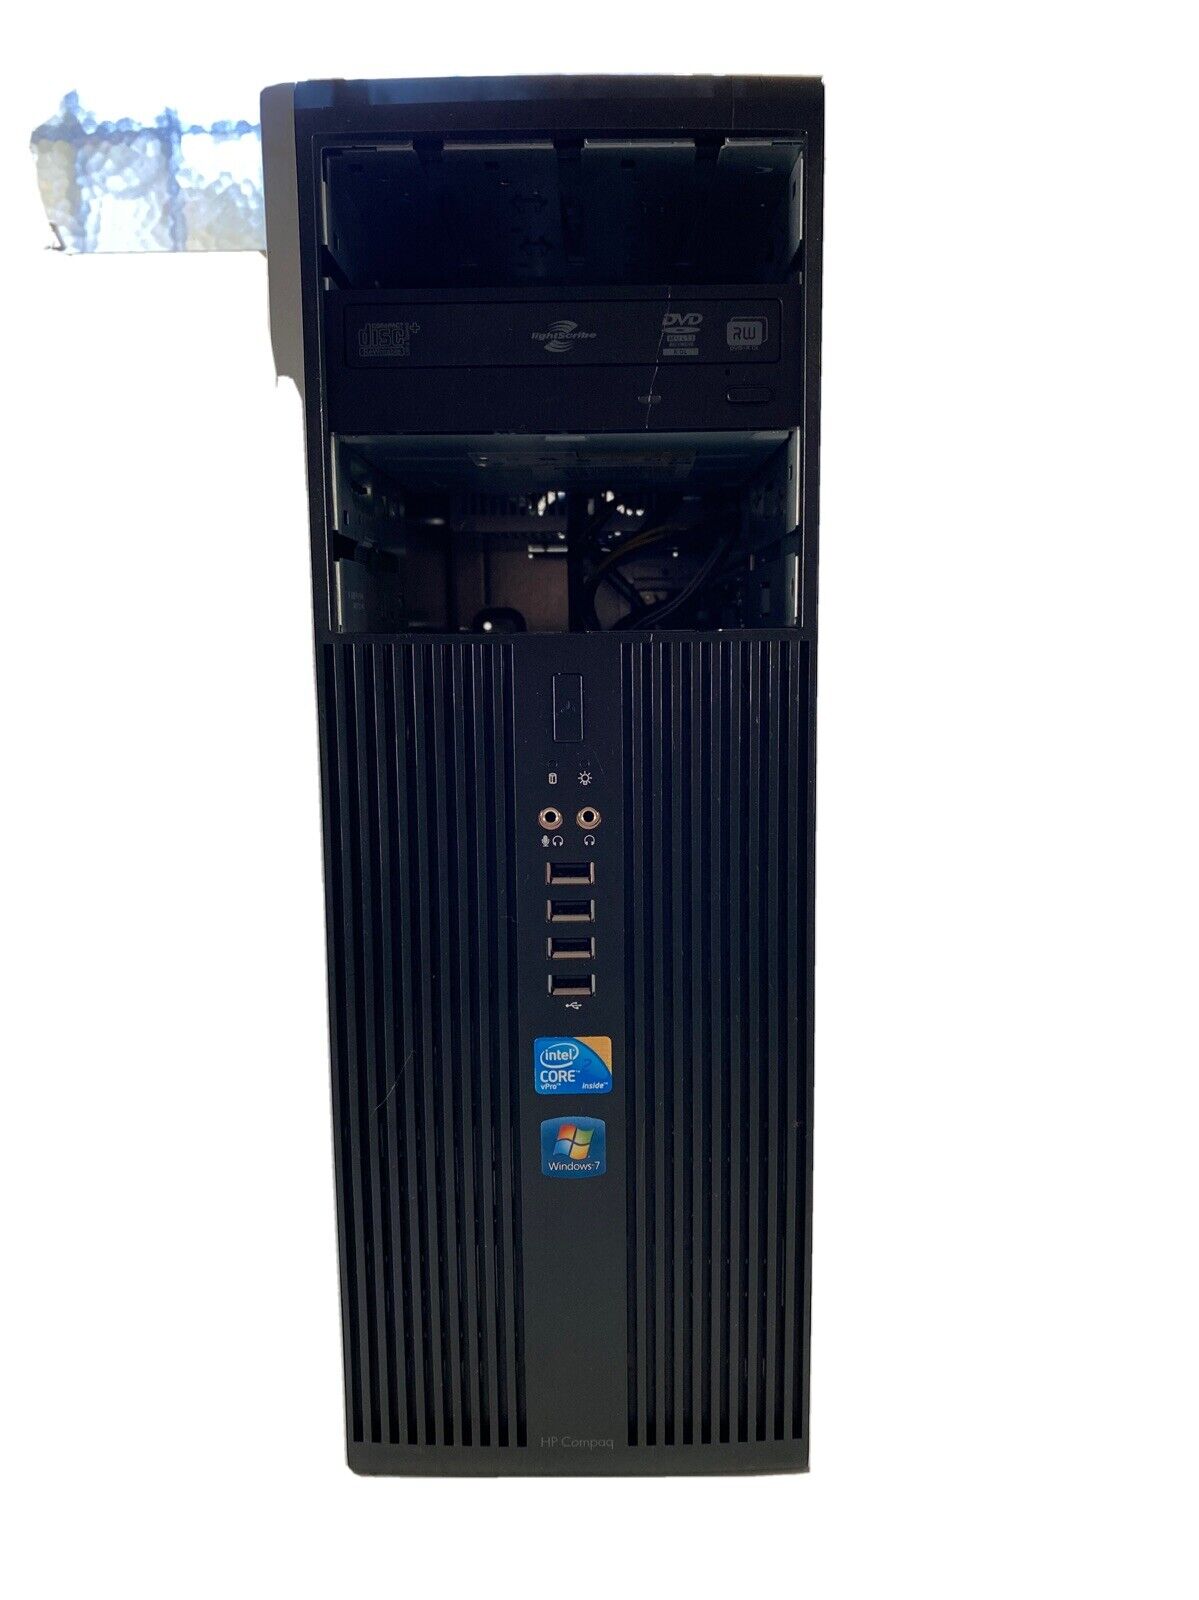 HP Compaq 8000 Elite MT Core 2 Duo E8400 @3.0GHz 4GB RAM 320GB HDD Win 10 Pro